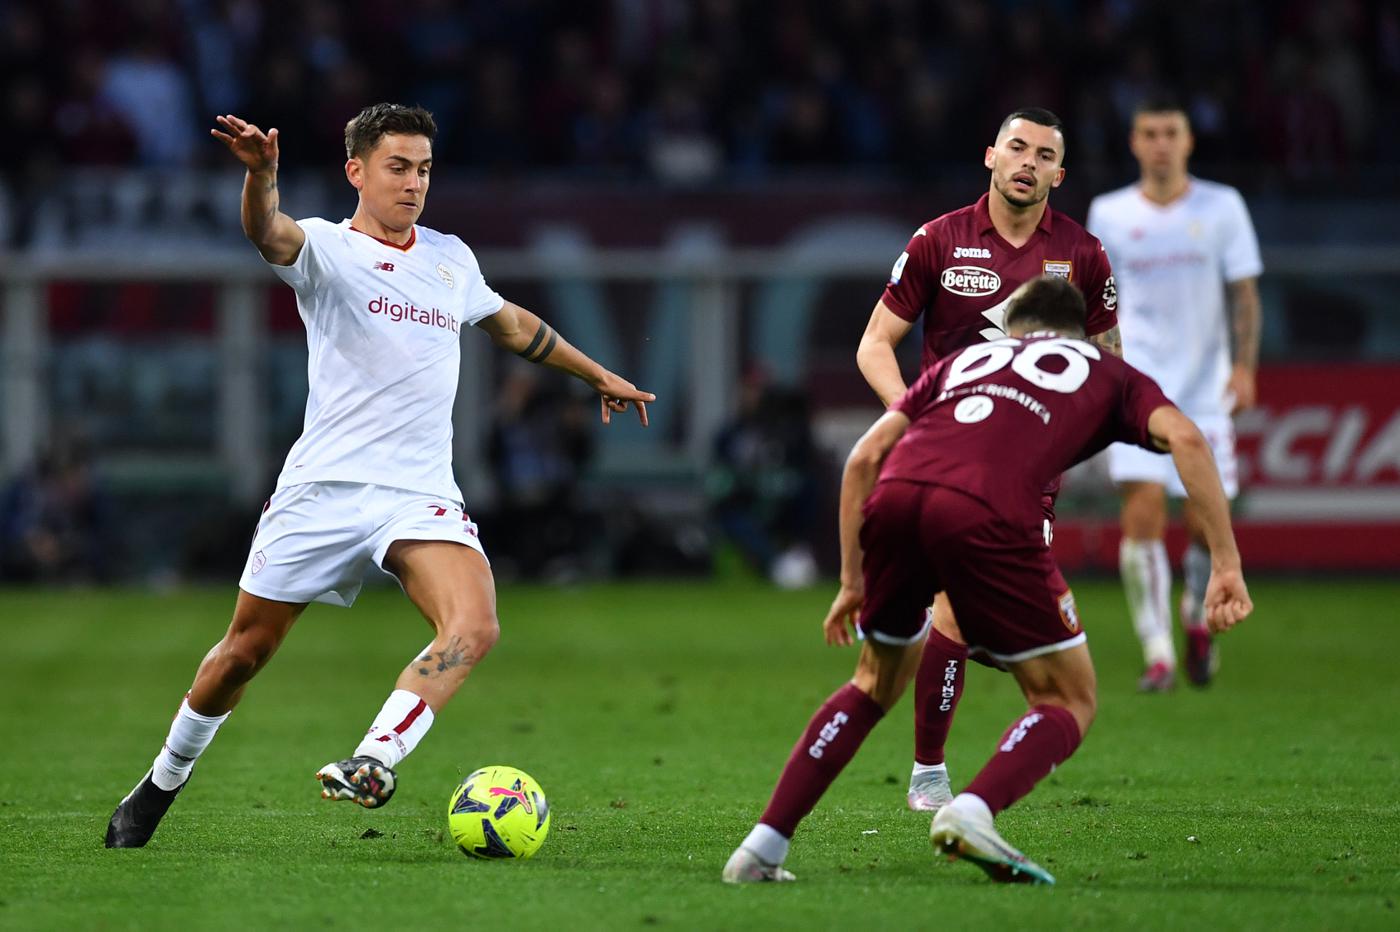 Torino v Roma - 0-1. Mistrzostwa Włoch, runda 29. Przegląd meczów, statystyki